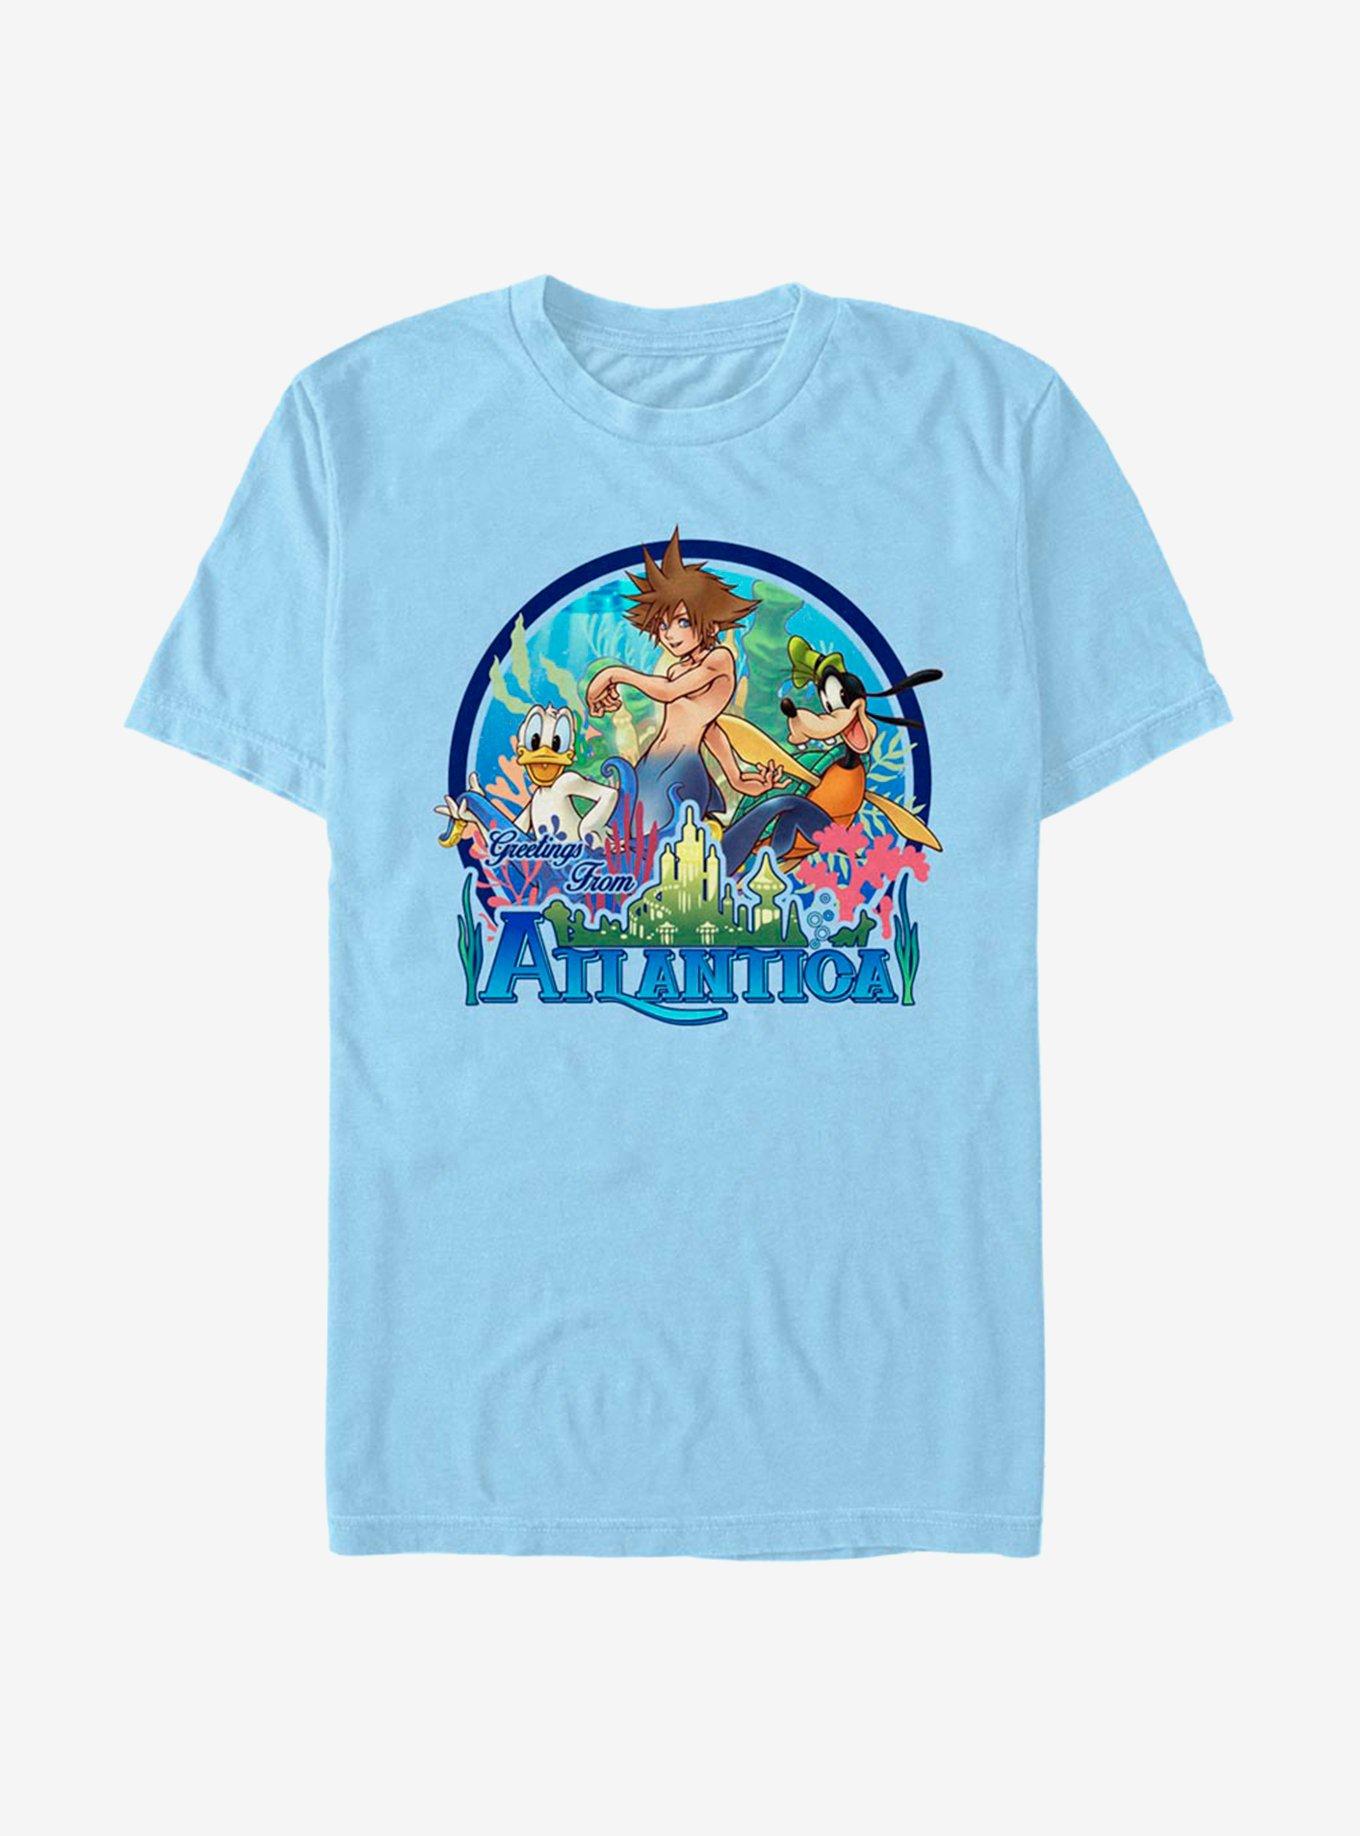 Disney Kingdom Hearts Atlantica World T-Shirt, , hi-res